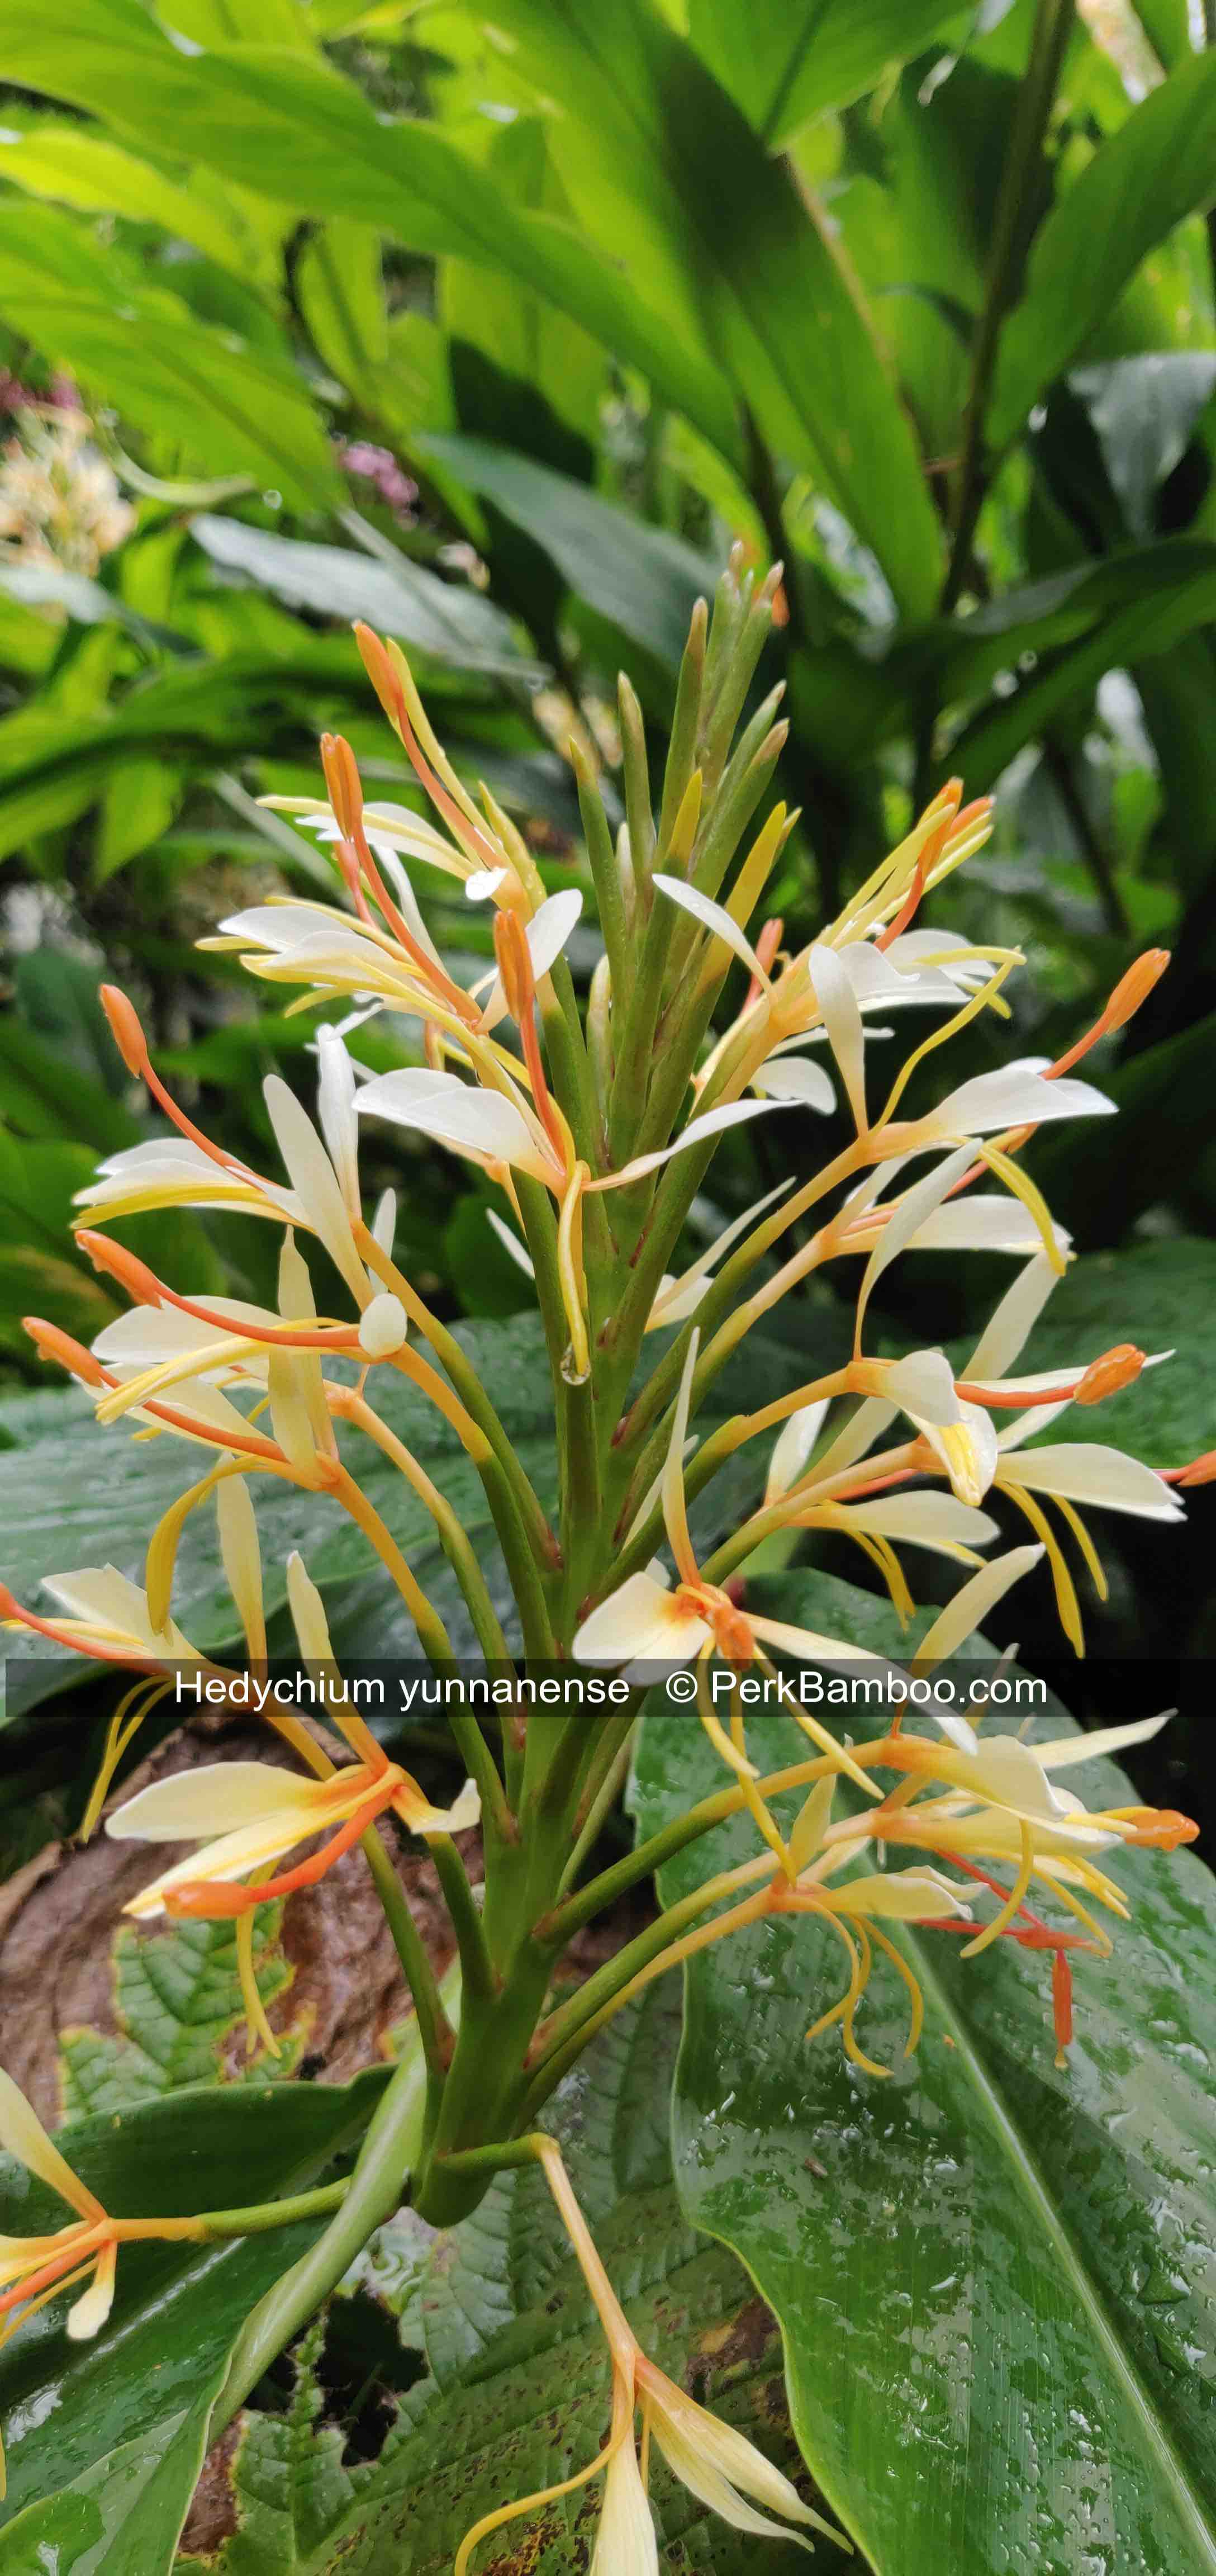 Hedychium yunannense flower1 PerkBamboo com